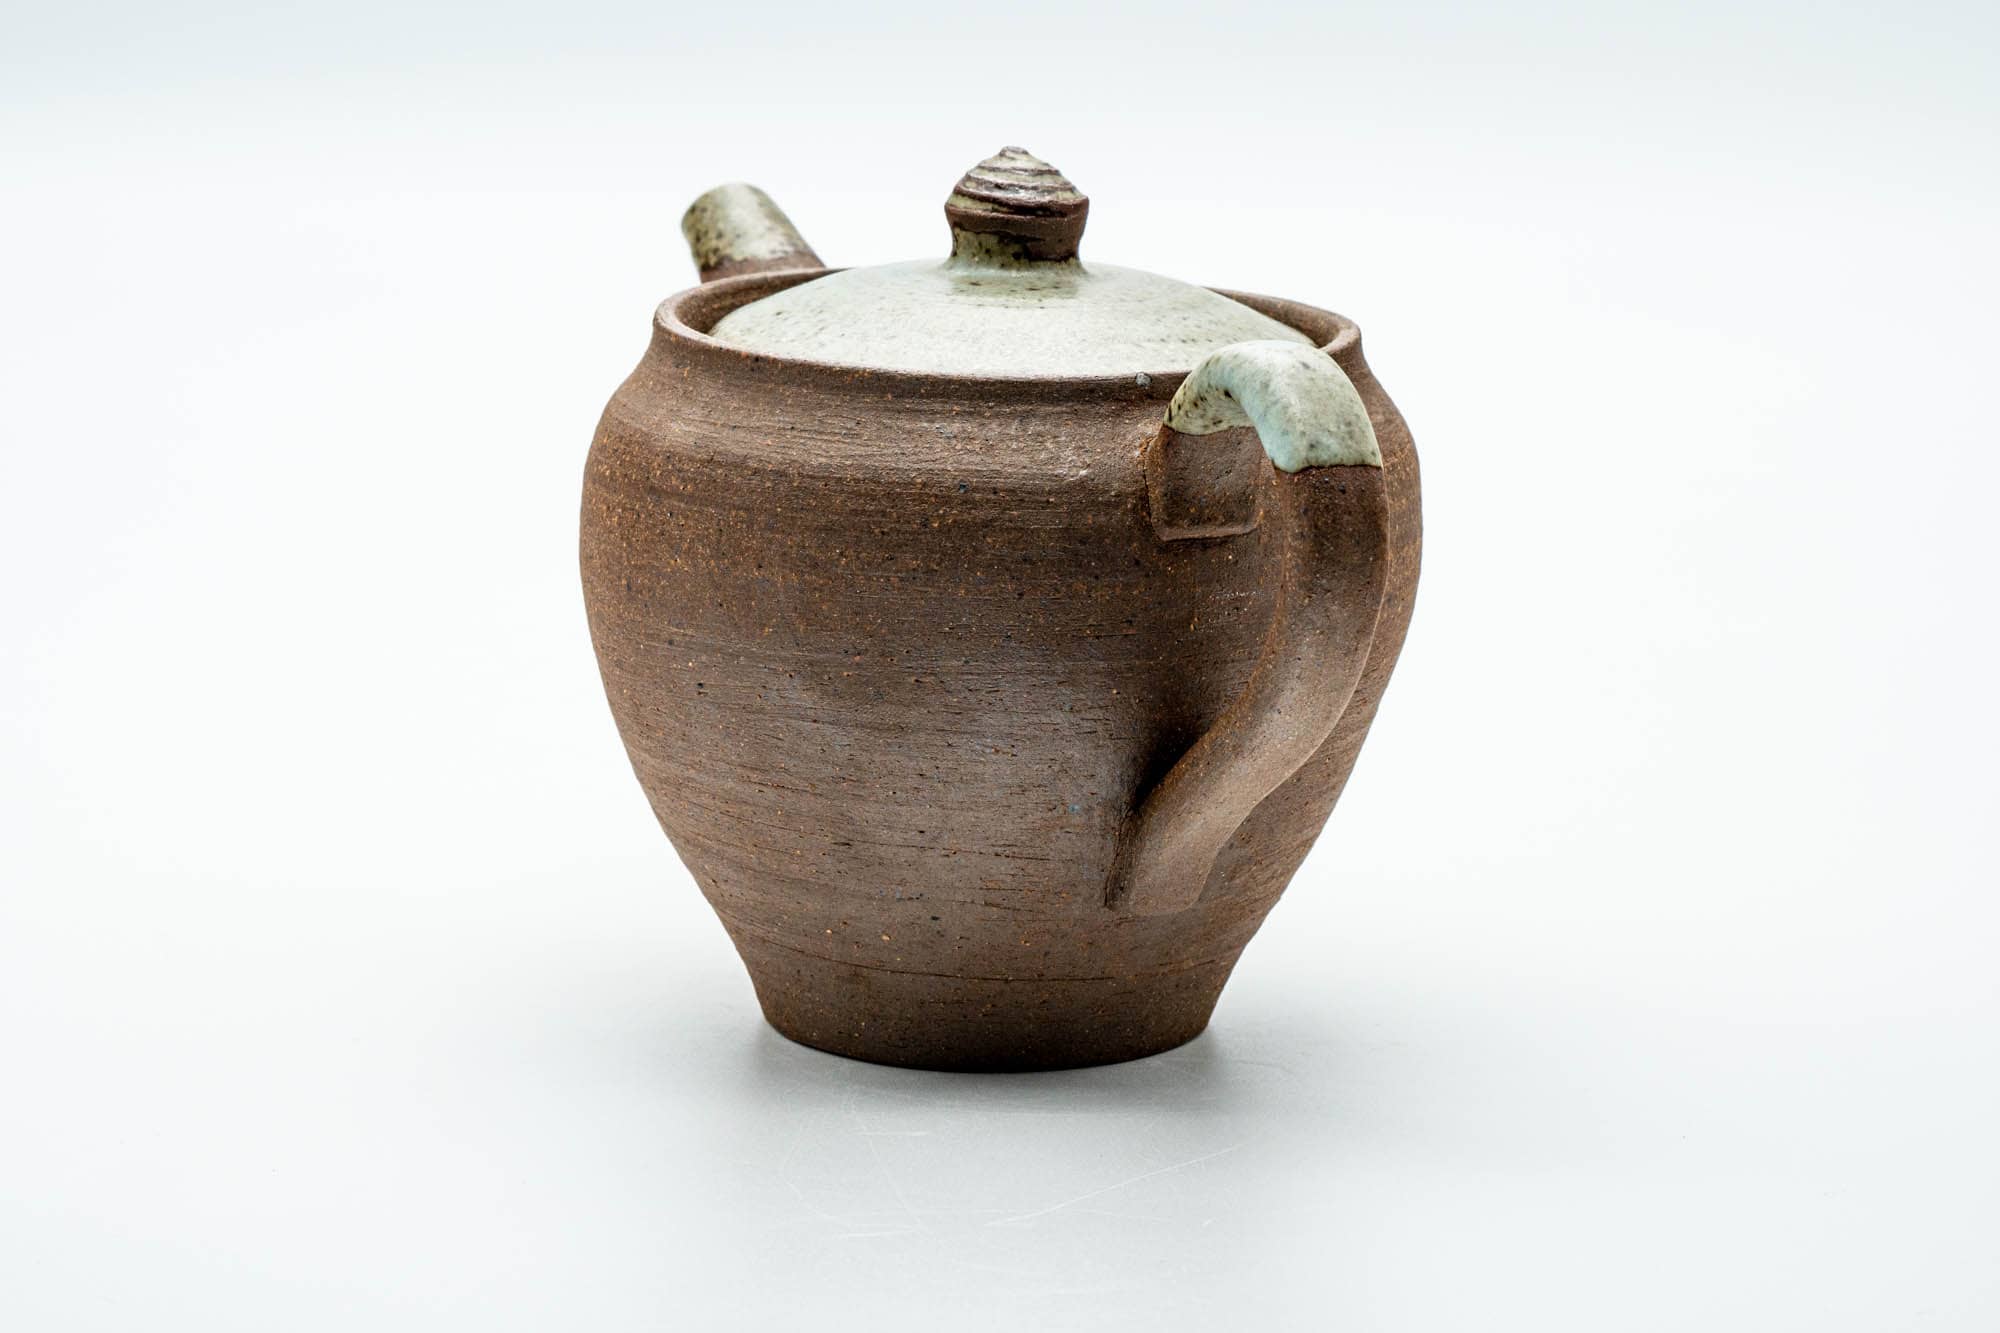 Japanese Kyusu - Textured Ushirode Ceramic Filter Teapot - 450ml